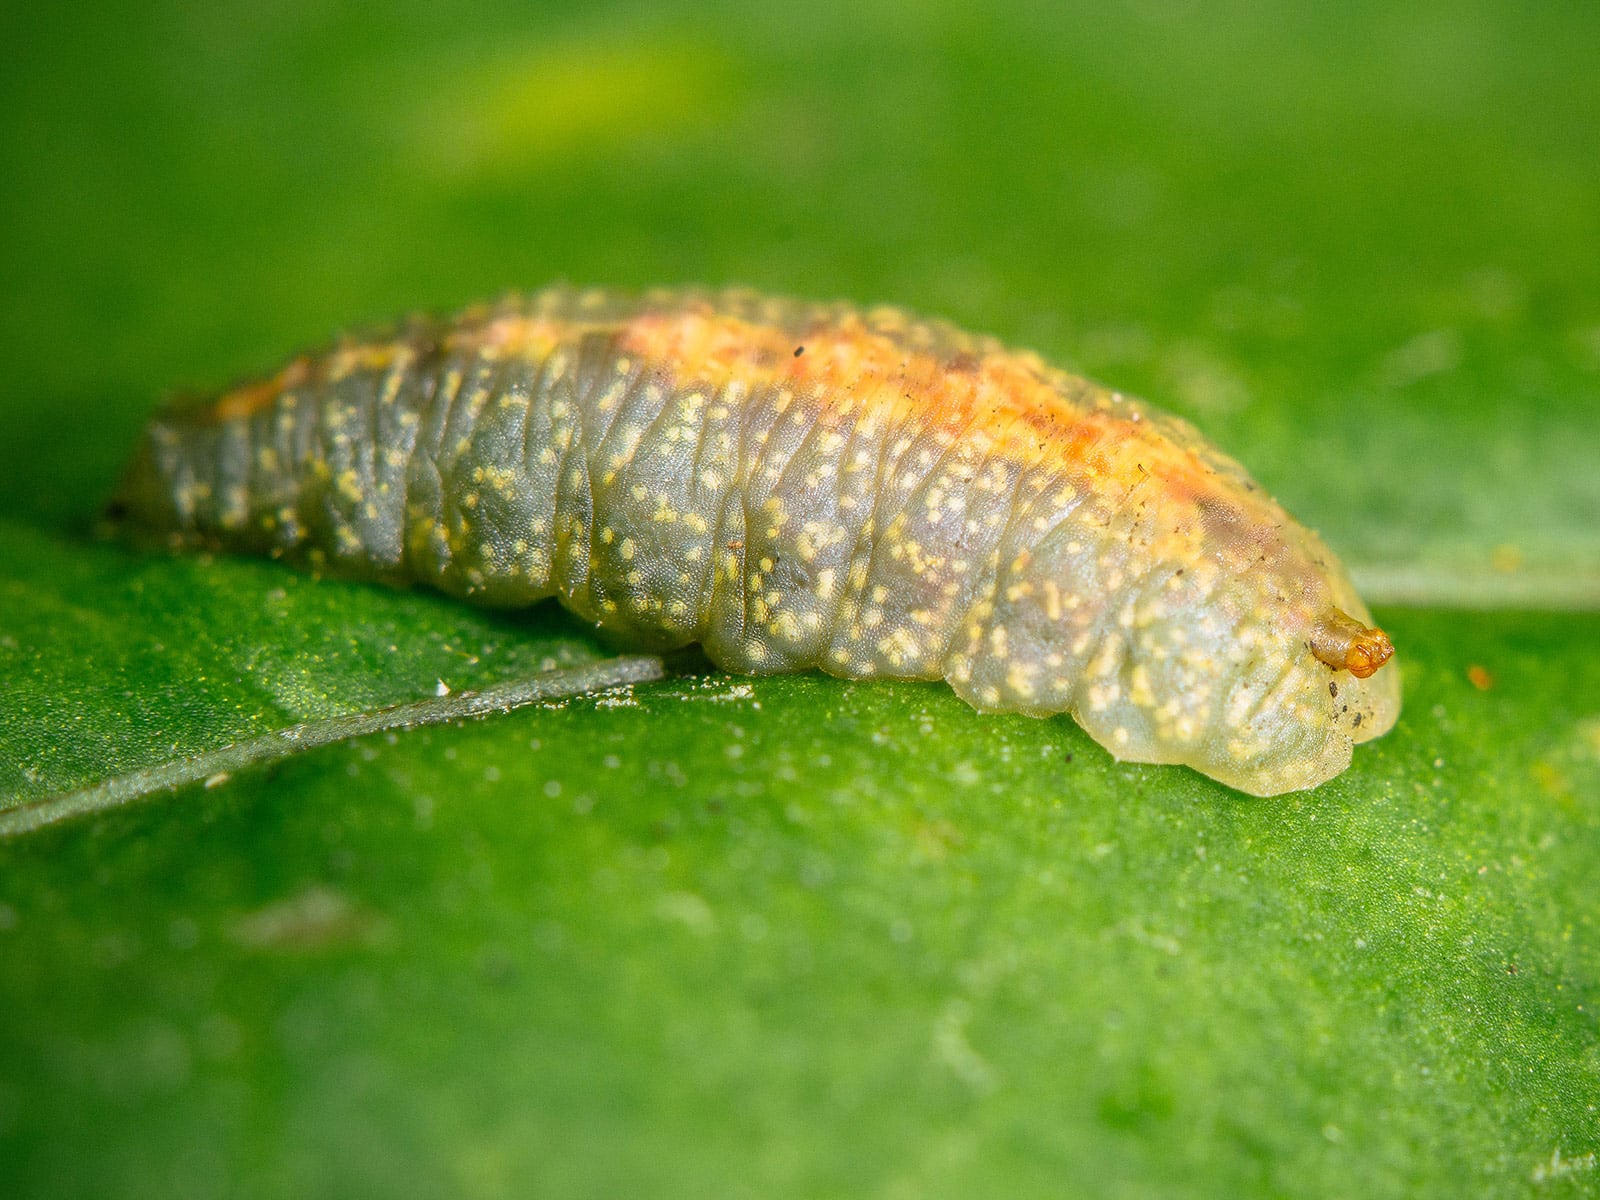 Slug-like body of a lacewing maggot (larva) sitting on a leaf